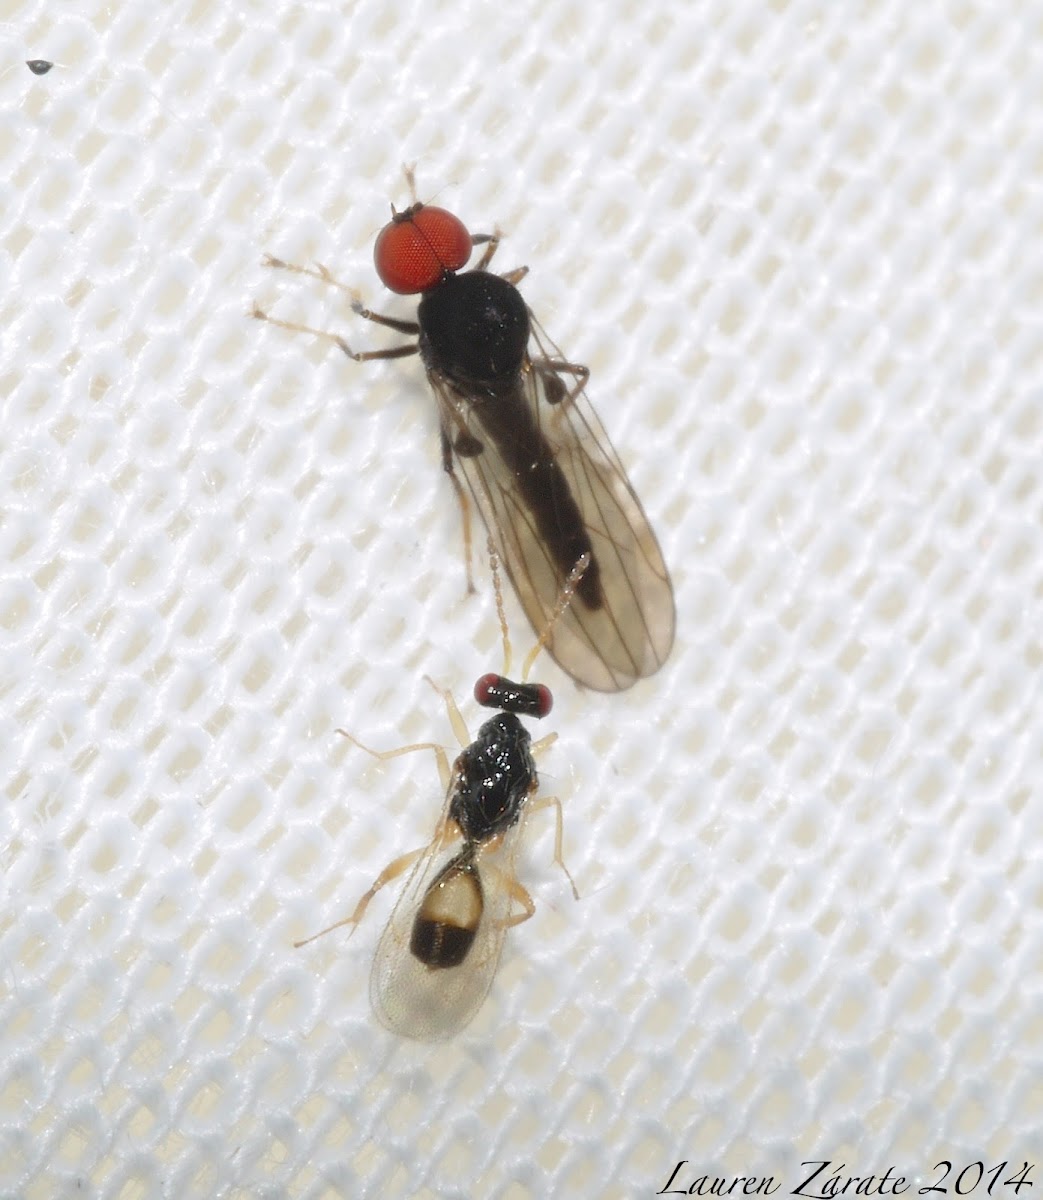 Micro Wasp